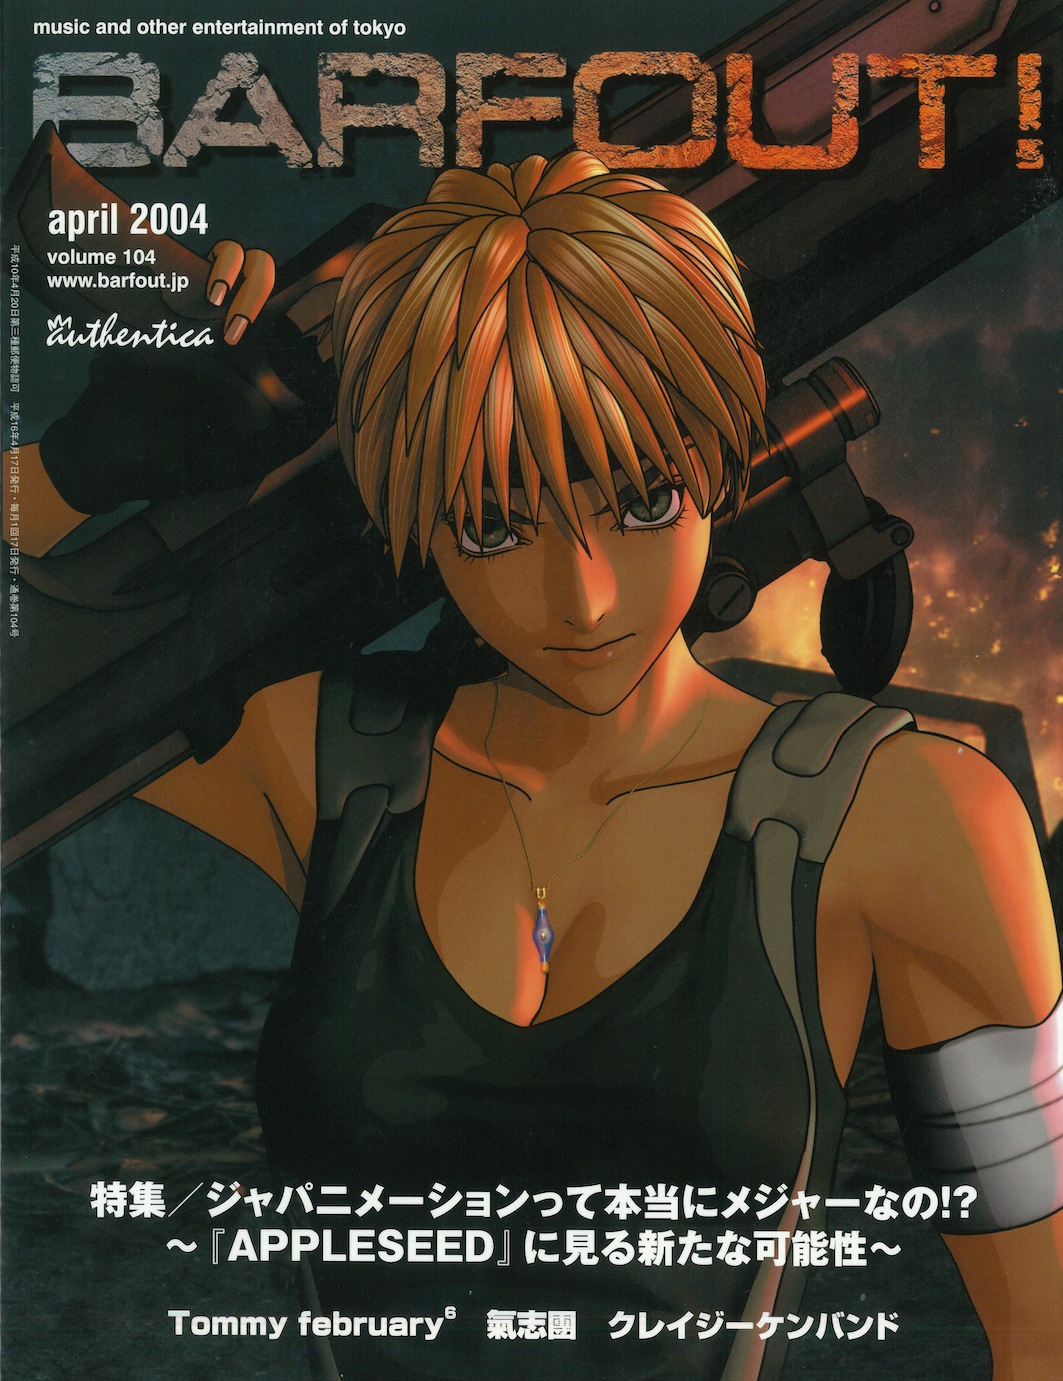 APRIL 2004 VOLUME 104